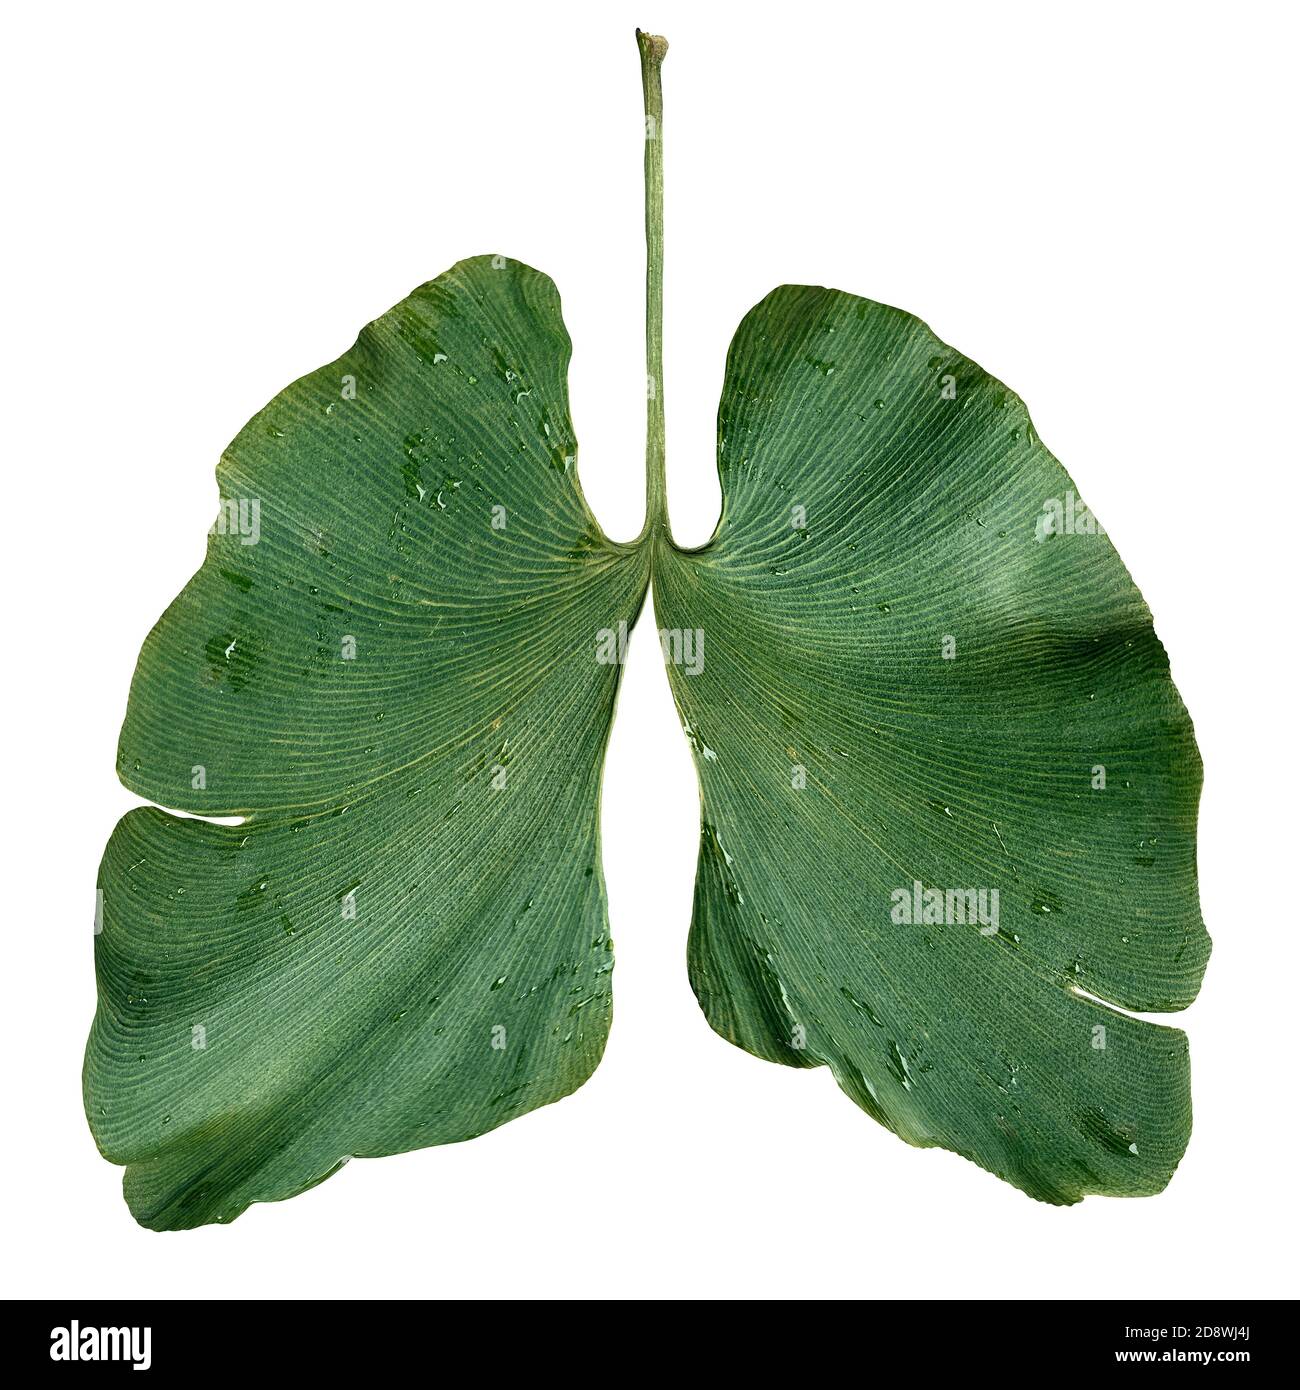 Ecología pulmones como concepto de conservación ambiental y forestal o símbolo de aire limpio con una hoja de ginkgo biloba en forma de pulmón respirable. Foto de stock